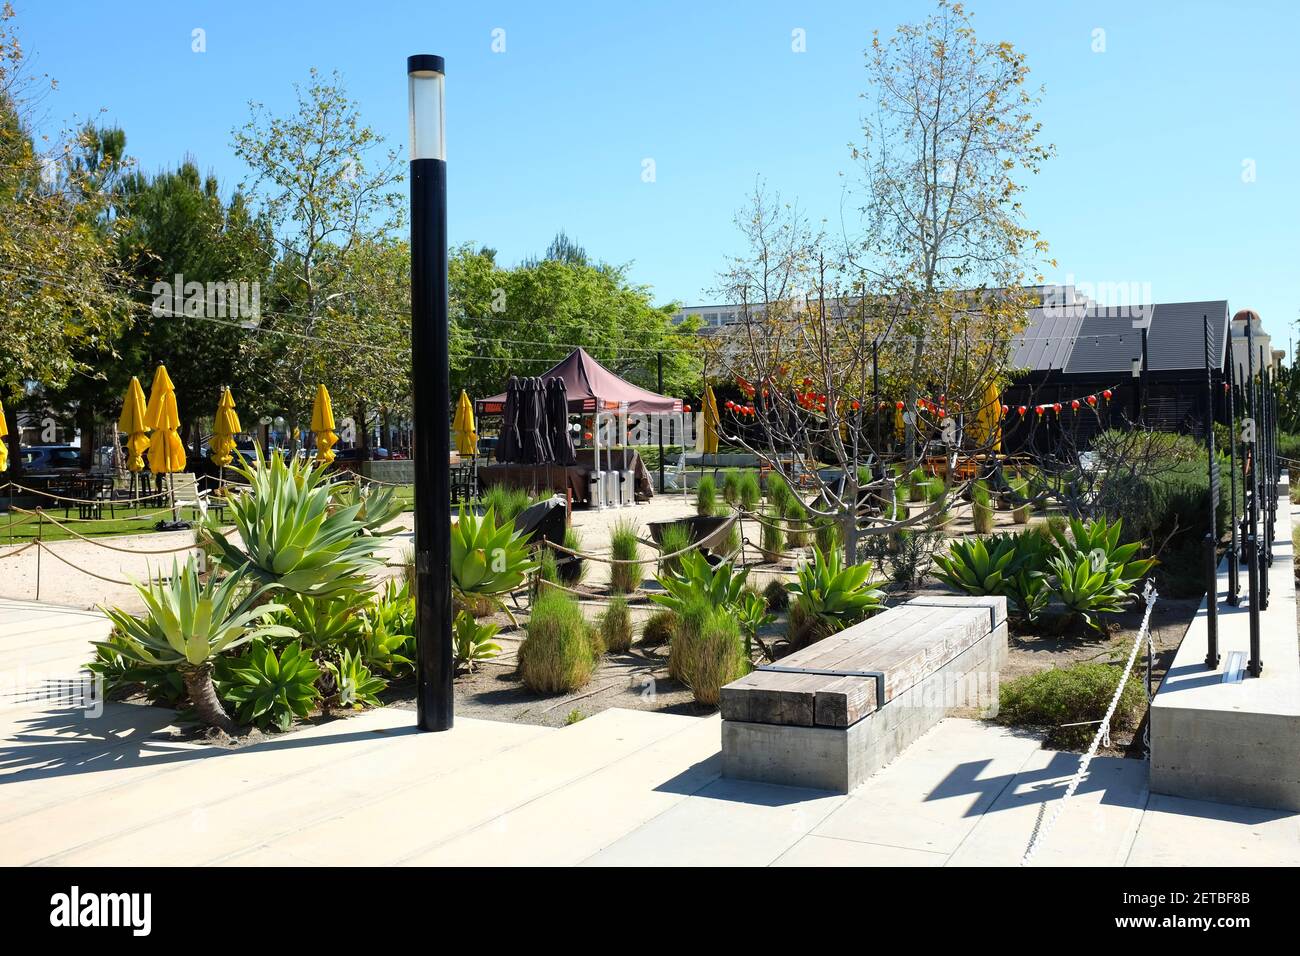 ANAHEIM, KALIFORNIEN - 1 MAR 2021: Farmers Park im Anaheim Packing District bietet Essen im Freien. Stockfoto